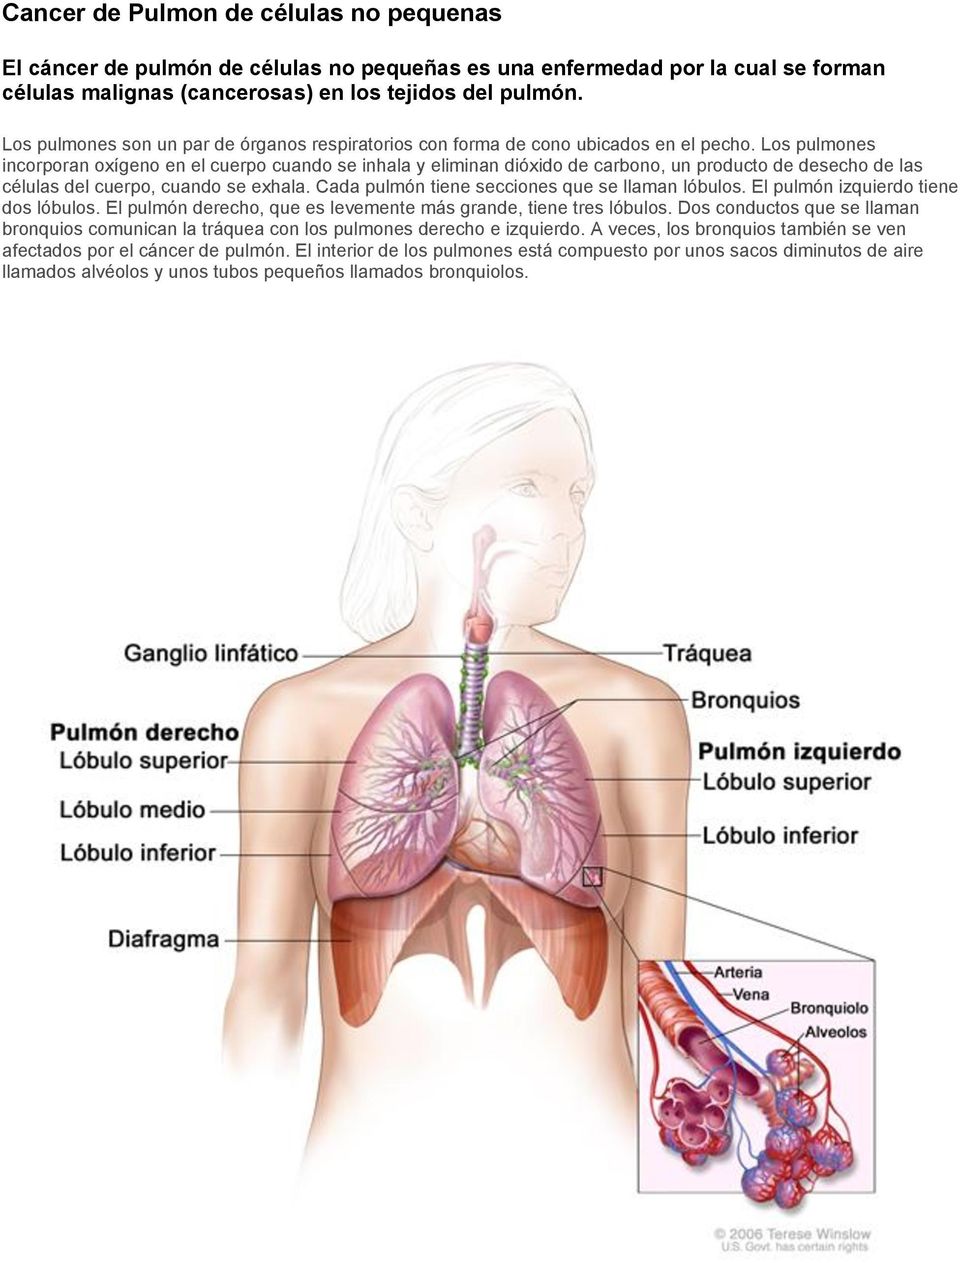 Los pulmones incorporan oxígeno en el cuerpo cuando se inhala y eliminan dióxido de carbono, un producto de desecho de las células del cuerpo, cuando se exhala.